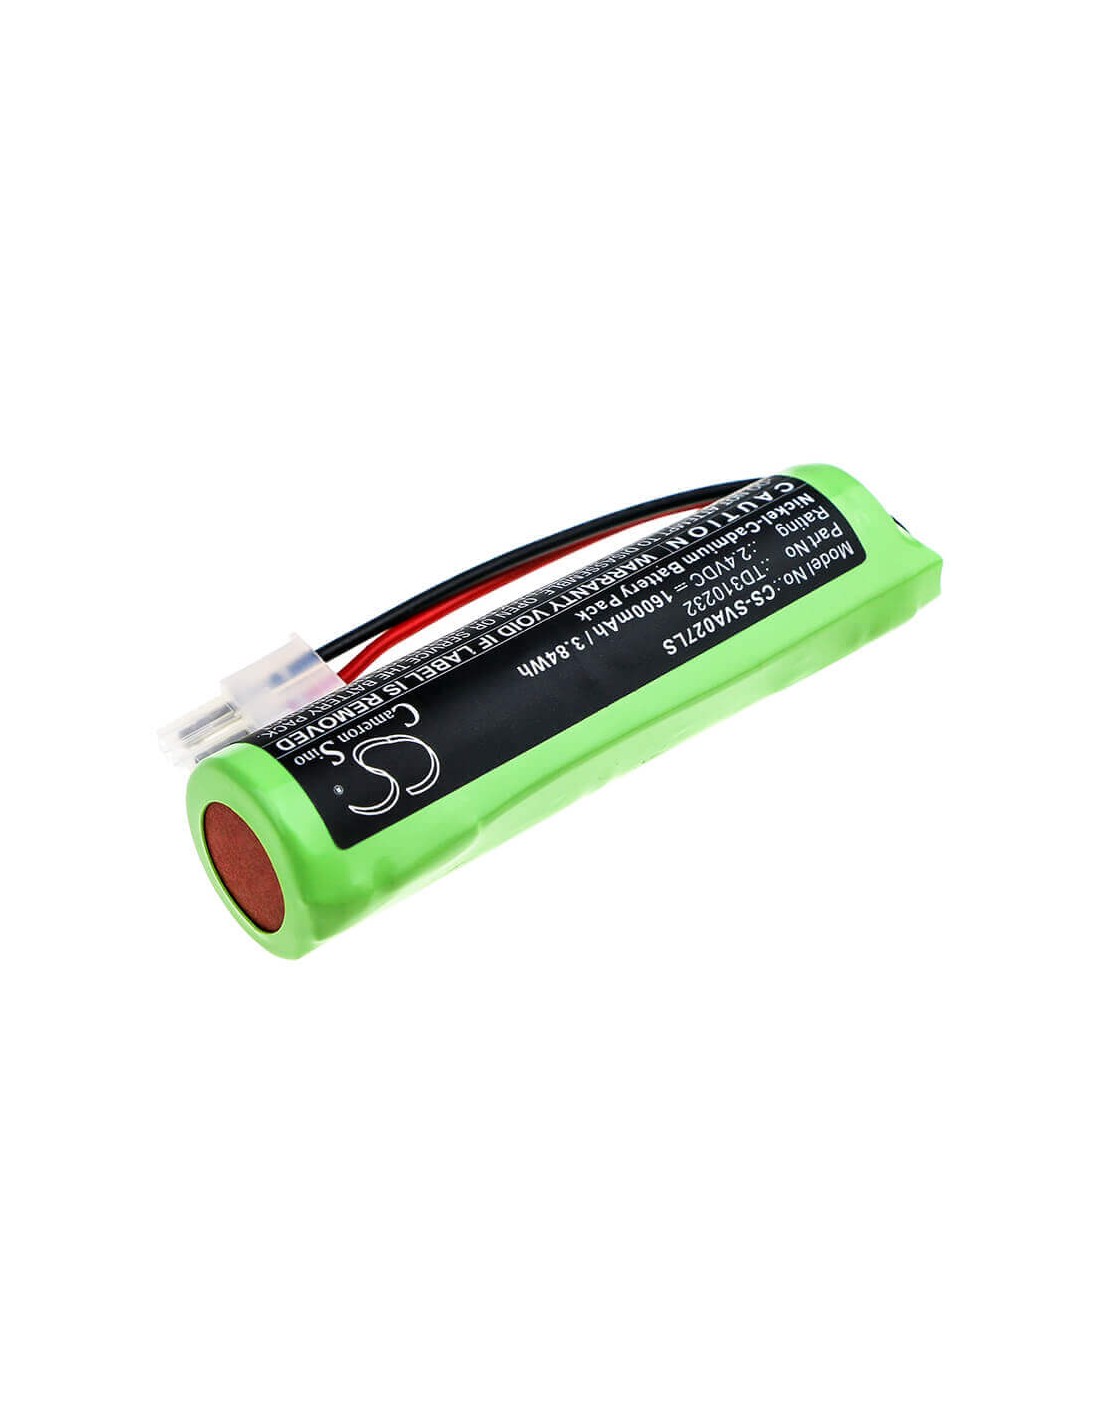 Battery for Schneider, Luxa, Ova Luxa 2.4V, 1600mAh - 3.84Wh